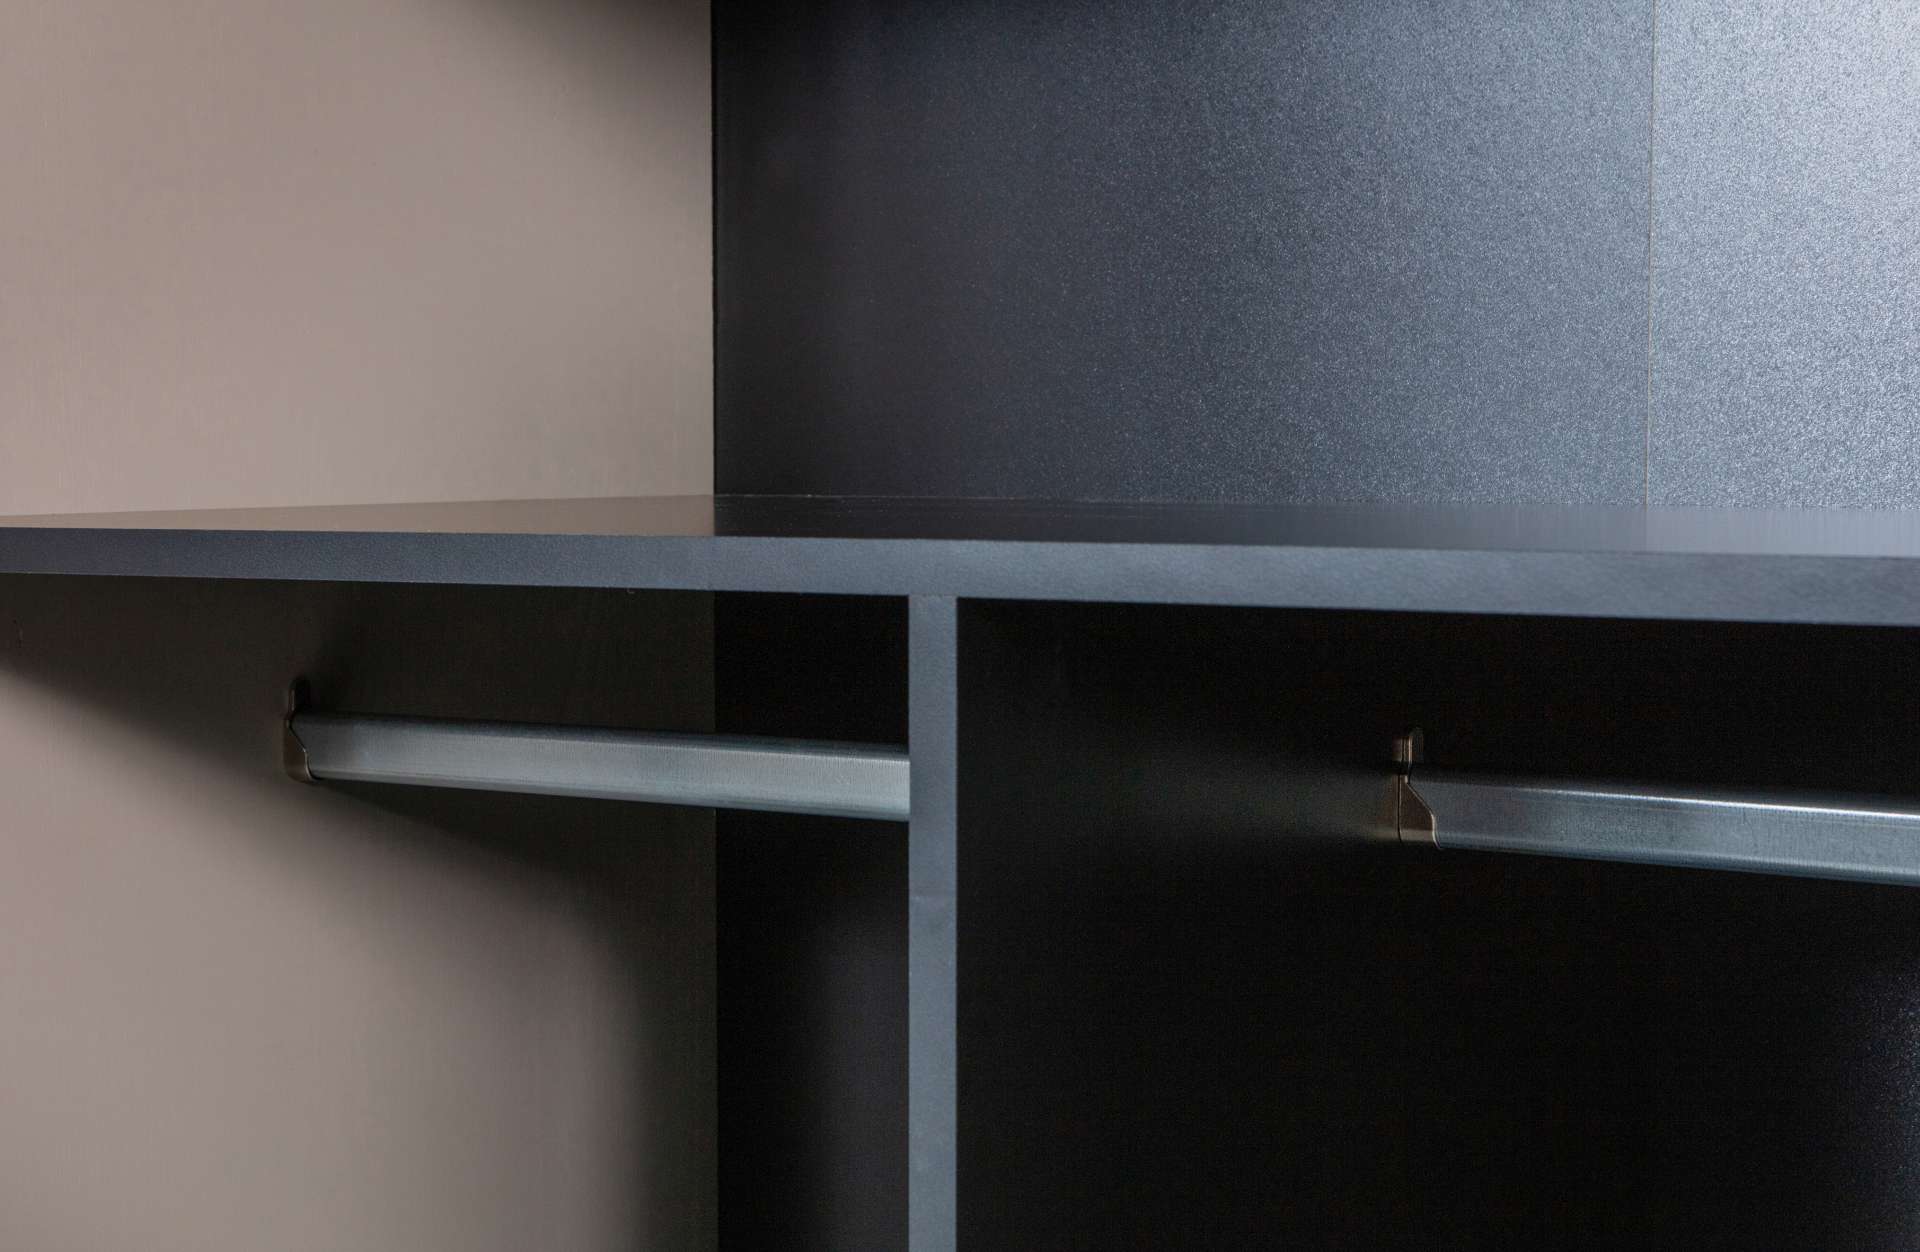 Der Modulschrank Daily Closet überzeugt mit seinem modernen Design. Gefertigt wurde er aus Kiefernholz, welches einen grauen Farbton besitzt. Der Schrank verfügt über zwei Türen und hat eine Größe von 200x100 cm